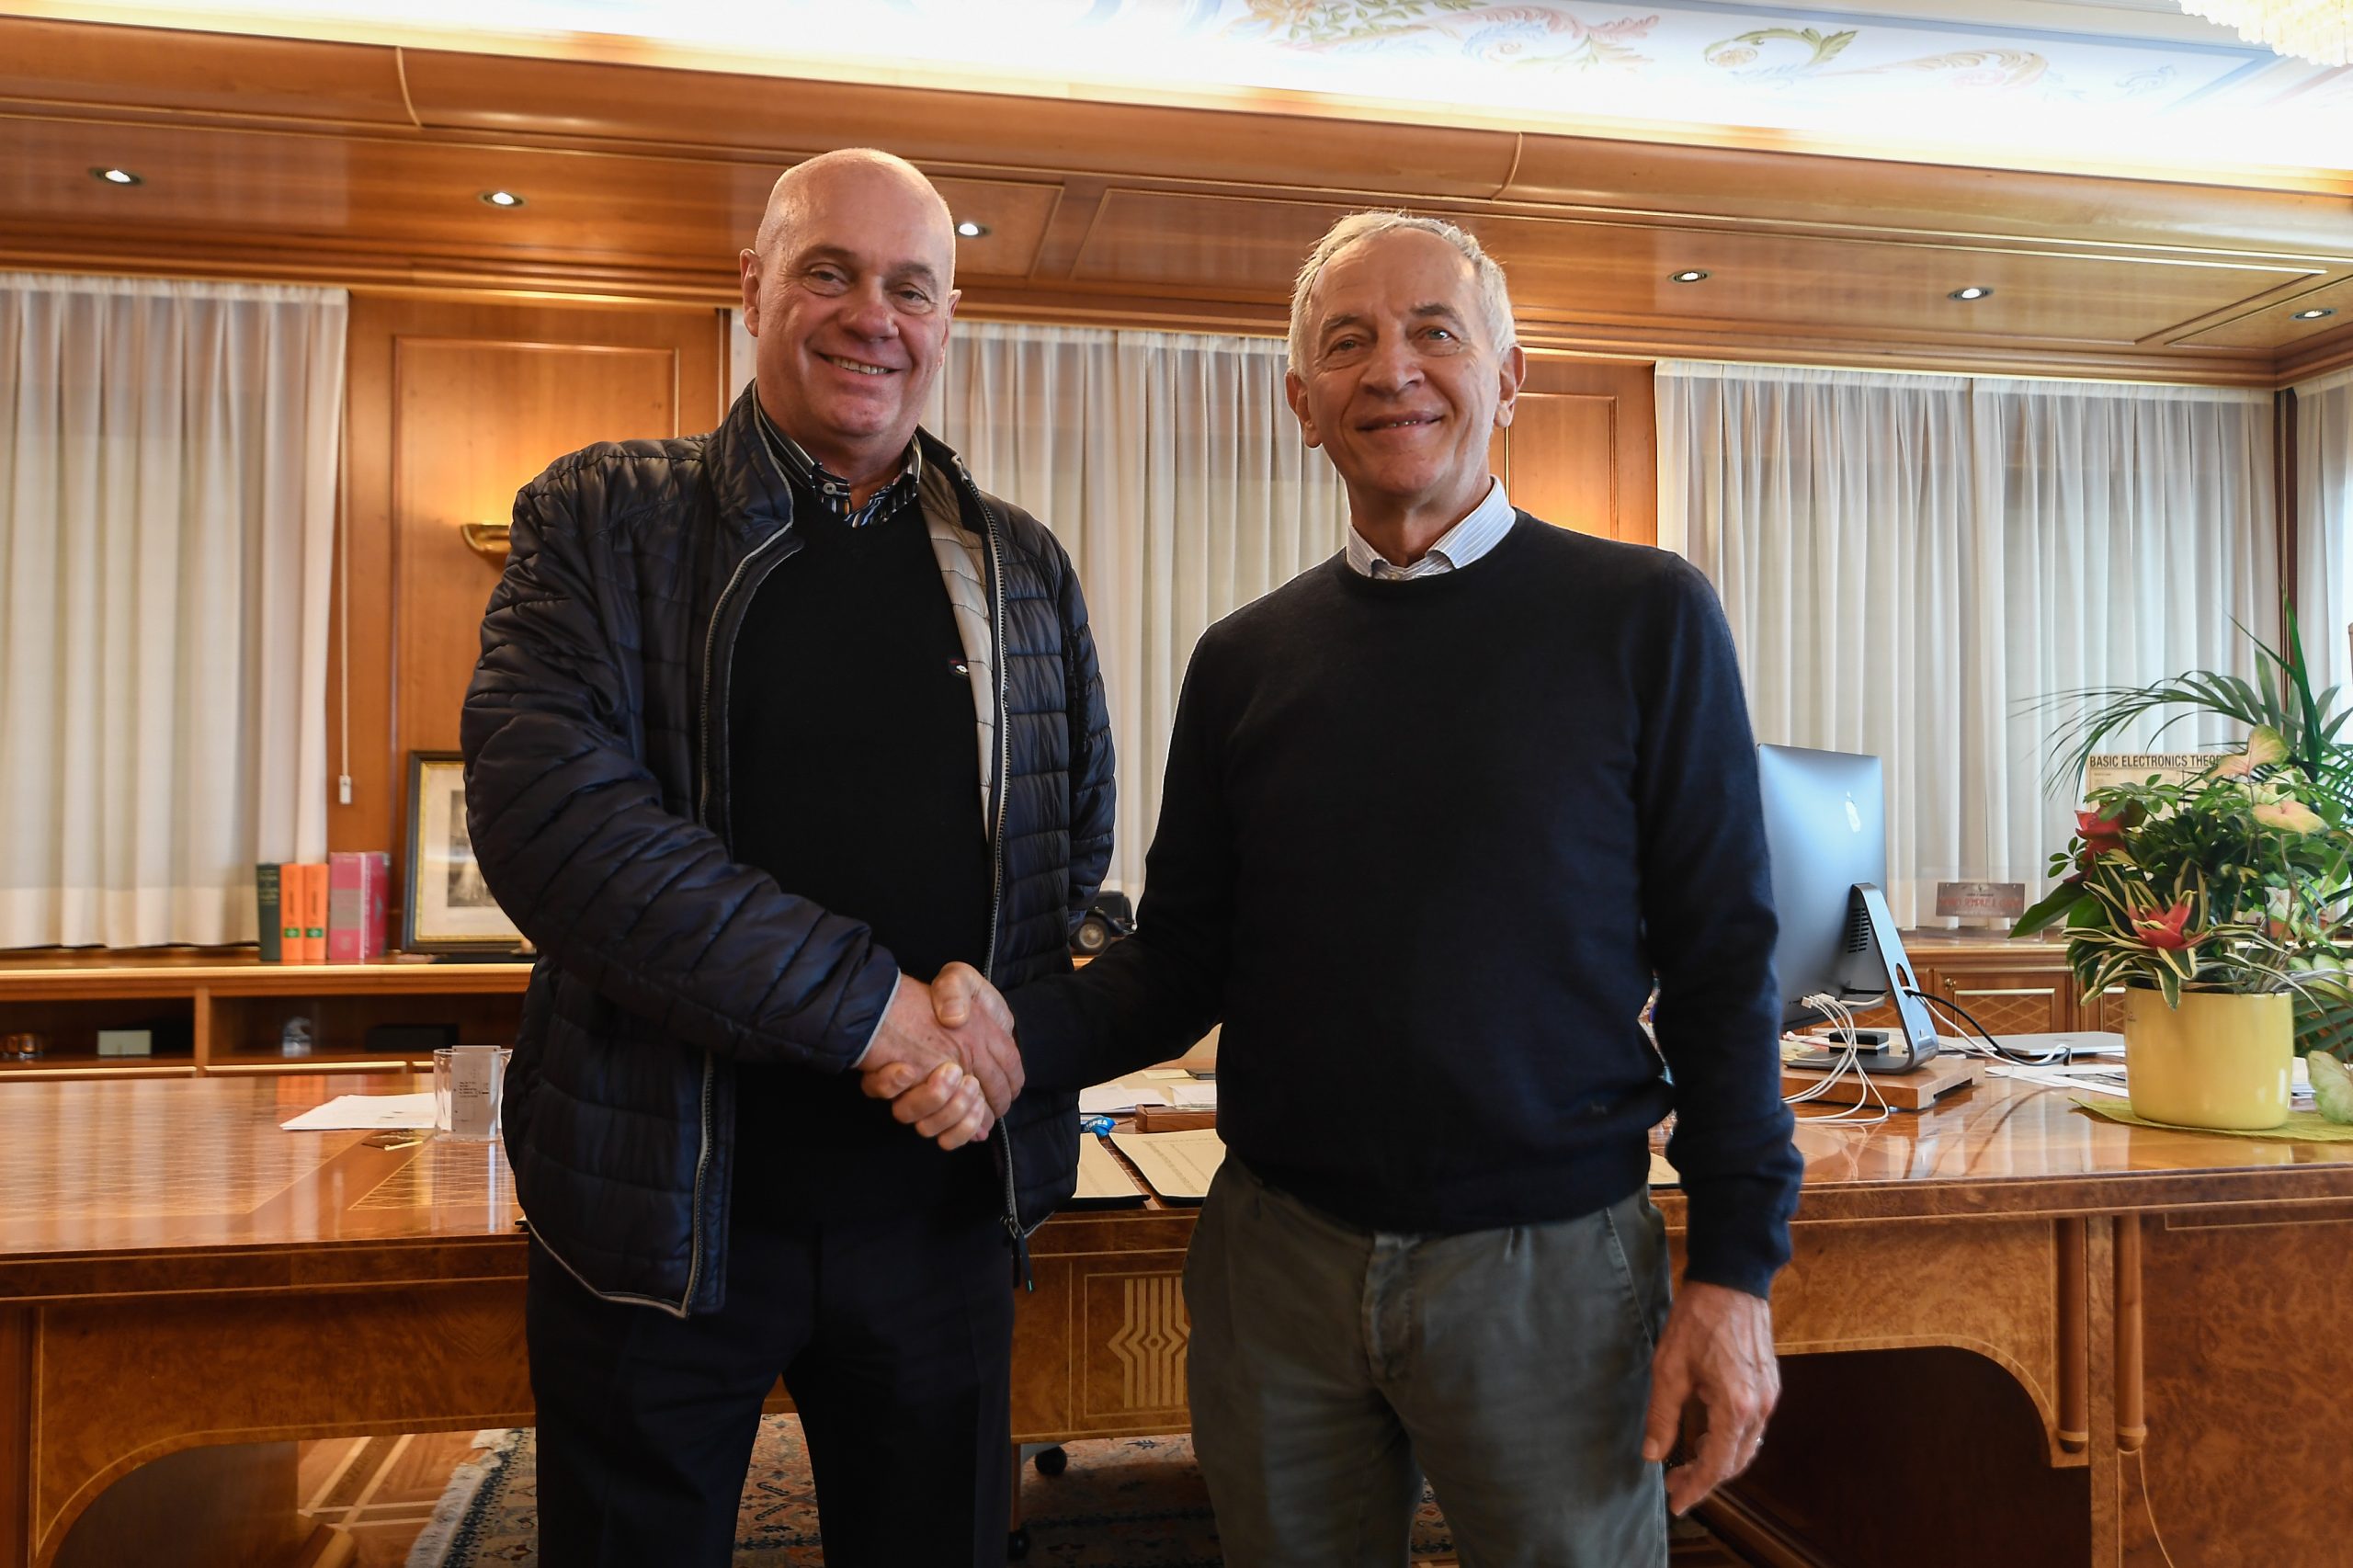 Giacomo Pastres, CEO of TECON, and Luciano Bonaria, CEO of SPEA